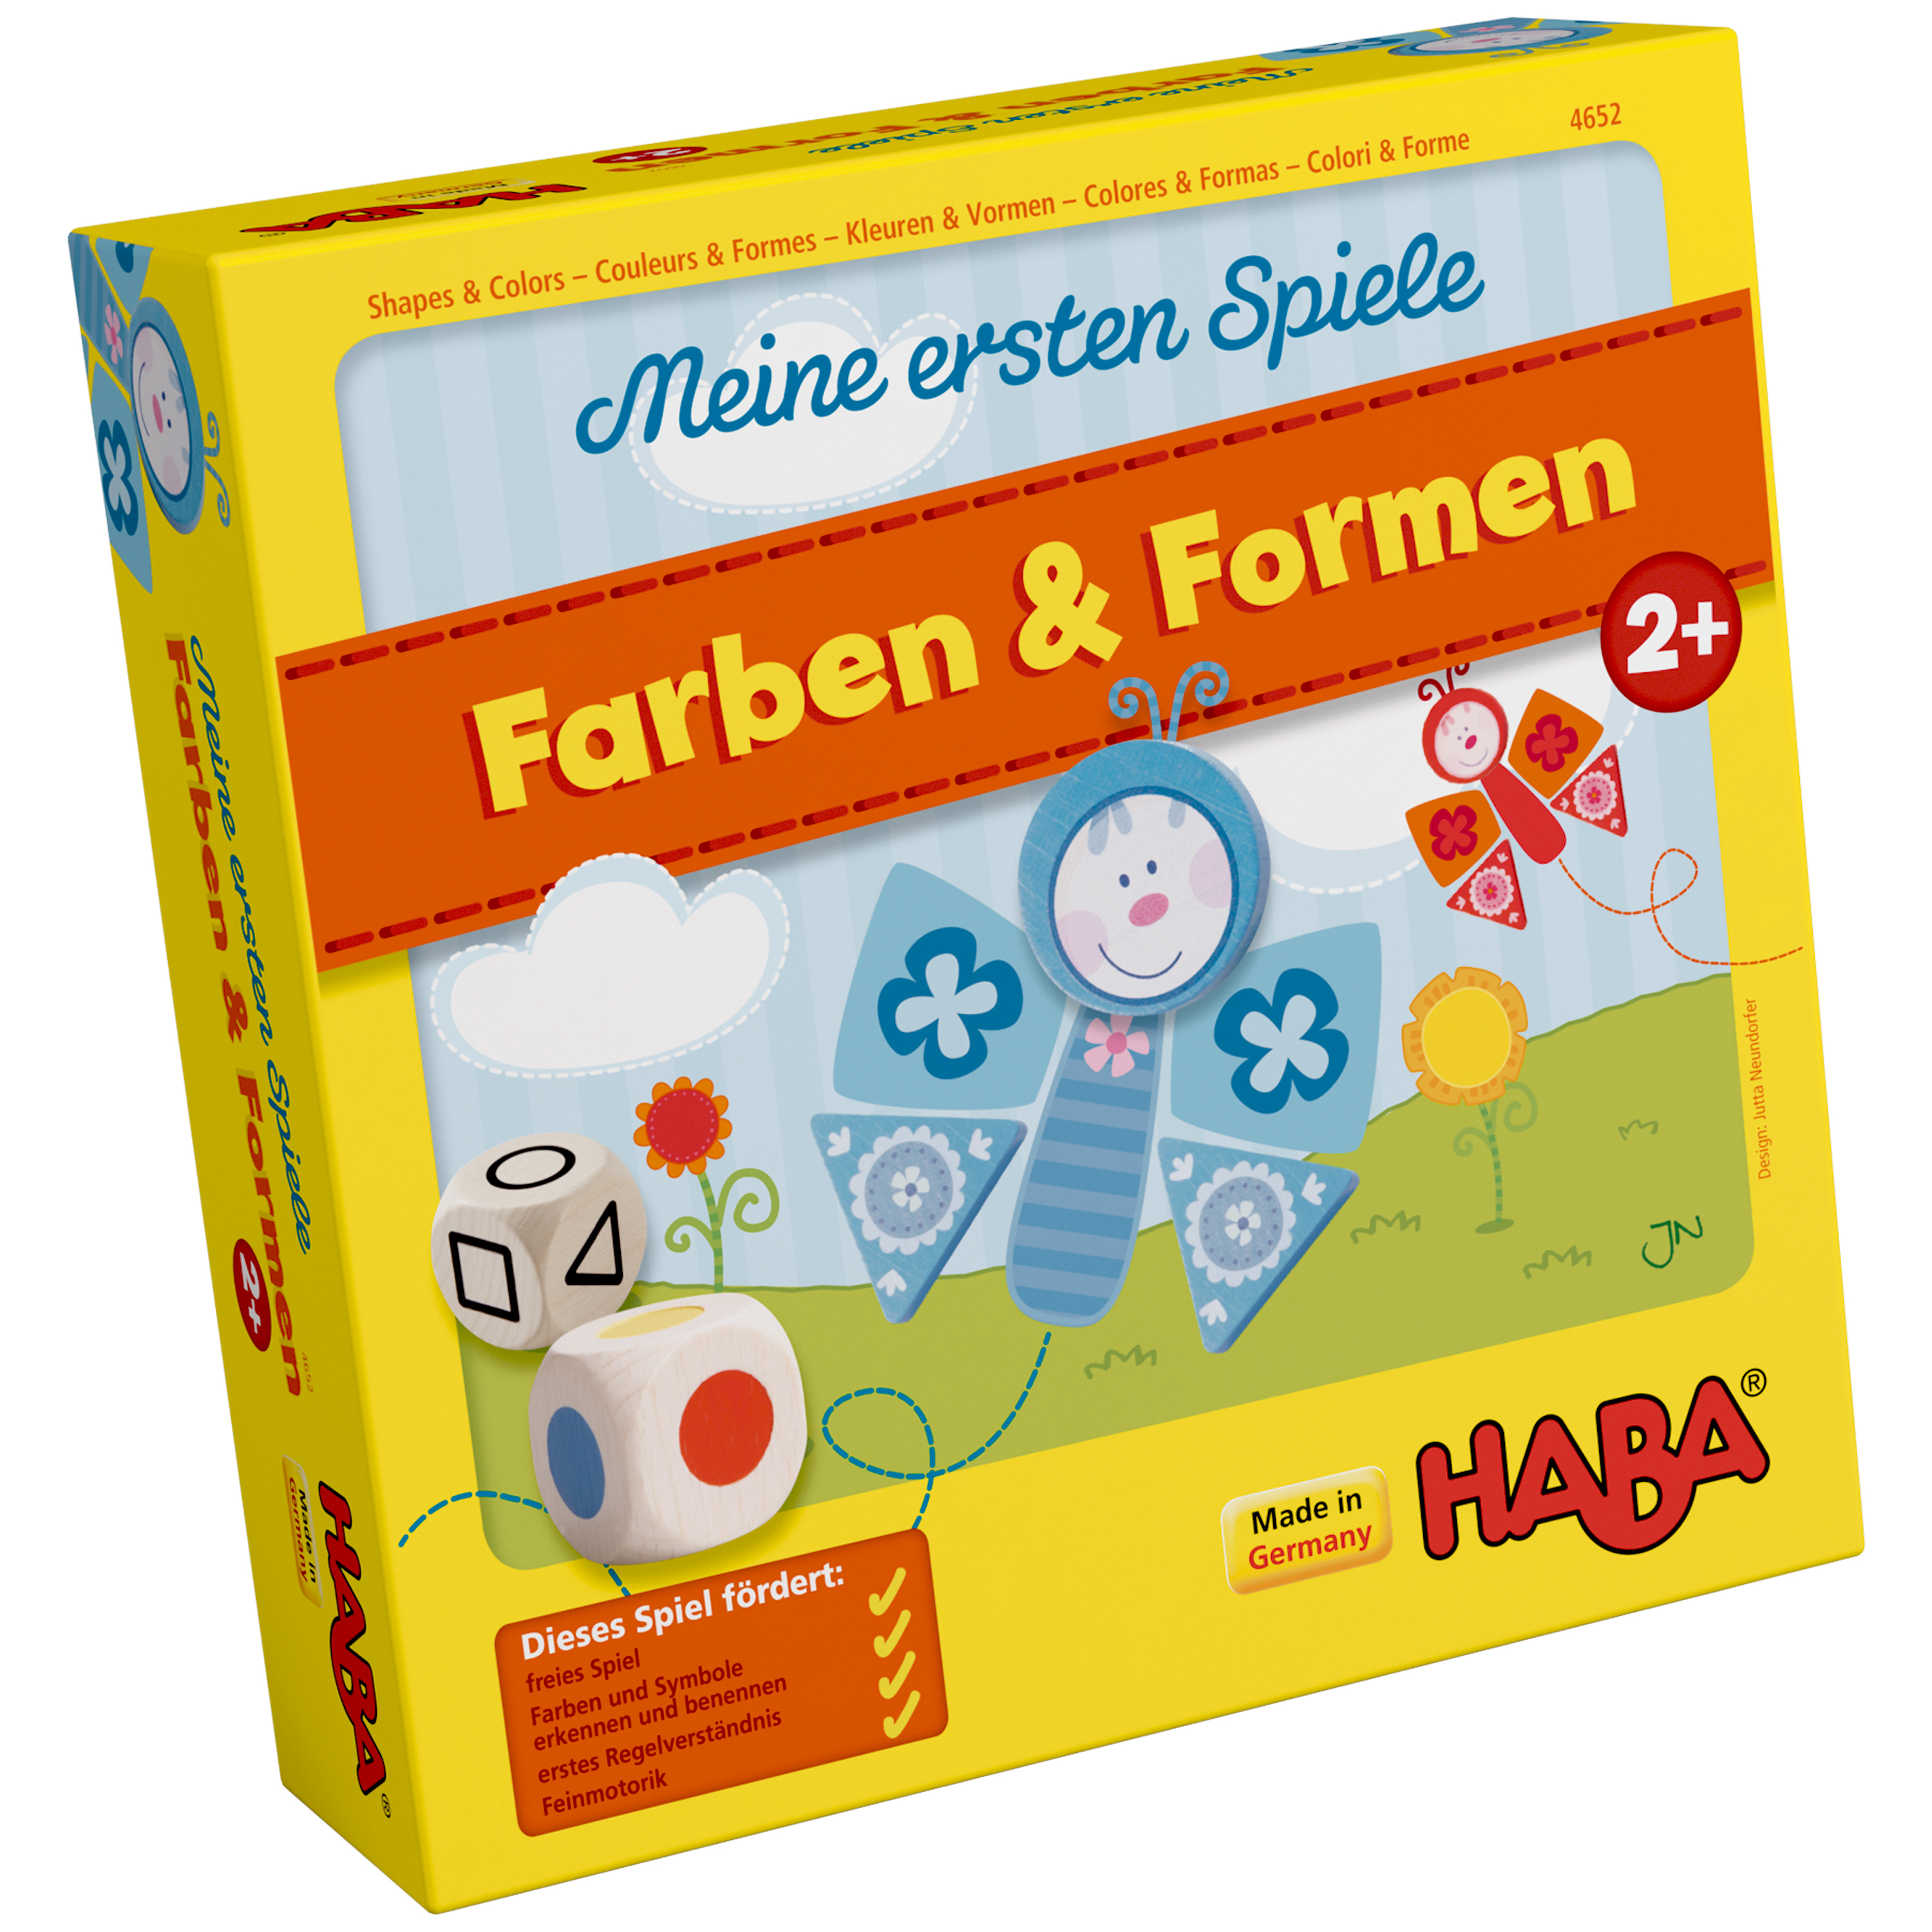 HABA Meine ersten Spiele - Farben & Formen